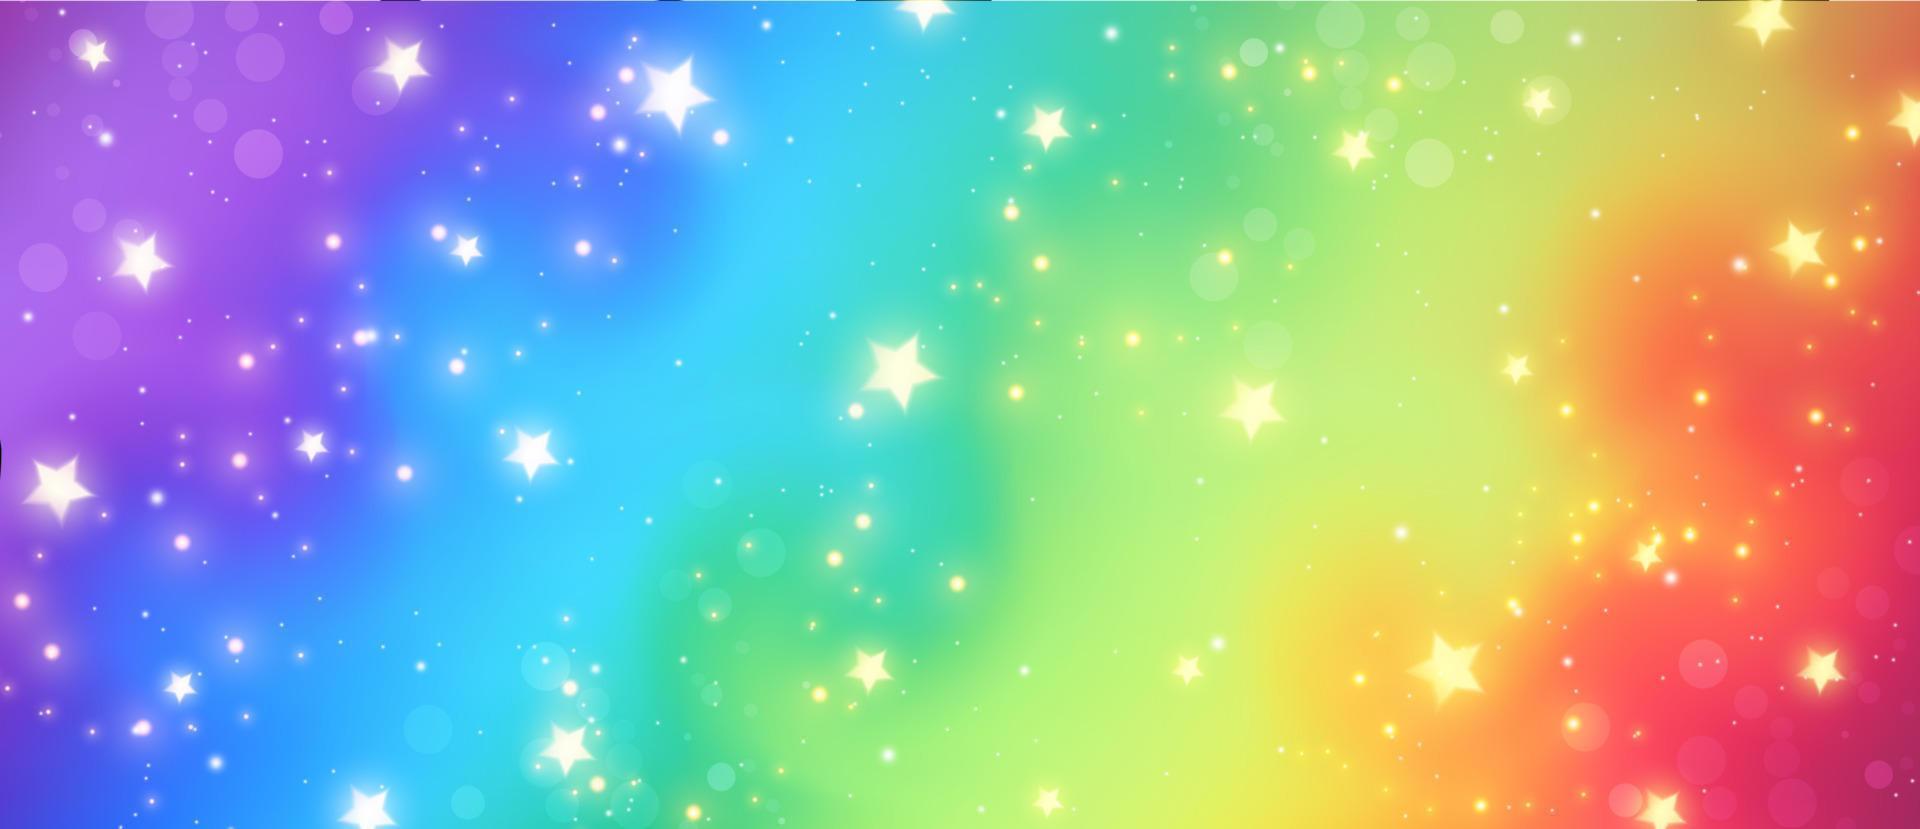 Regenbogen-Fantasy-Hintergrund. Holographische Illustration in Pastellfarben. niedlicher Cartoon-Girly-Hintergrund. heller bunter Himmel mit Sternen und Bokeh. Vektor-Illustration vektor